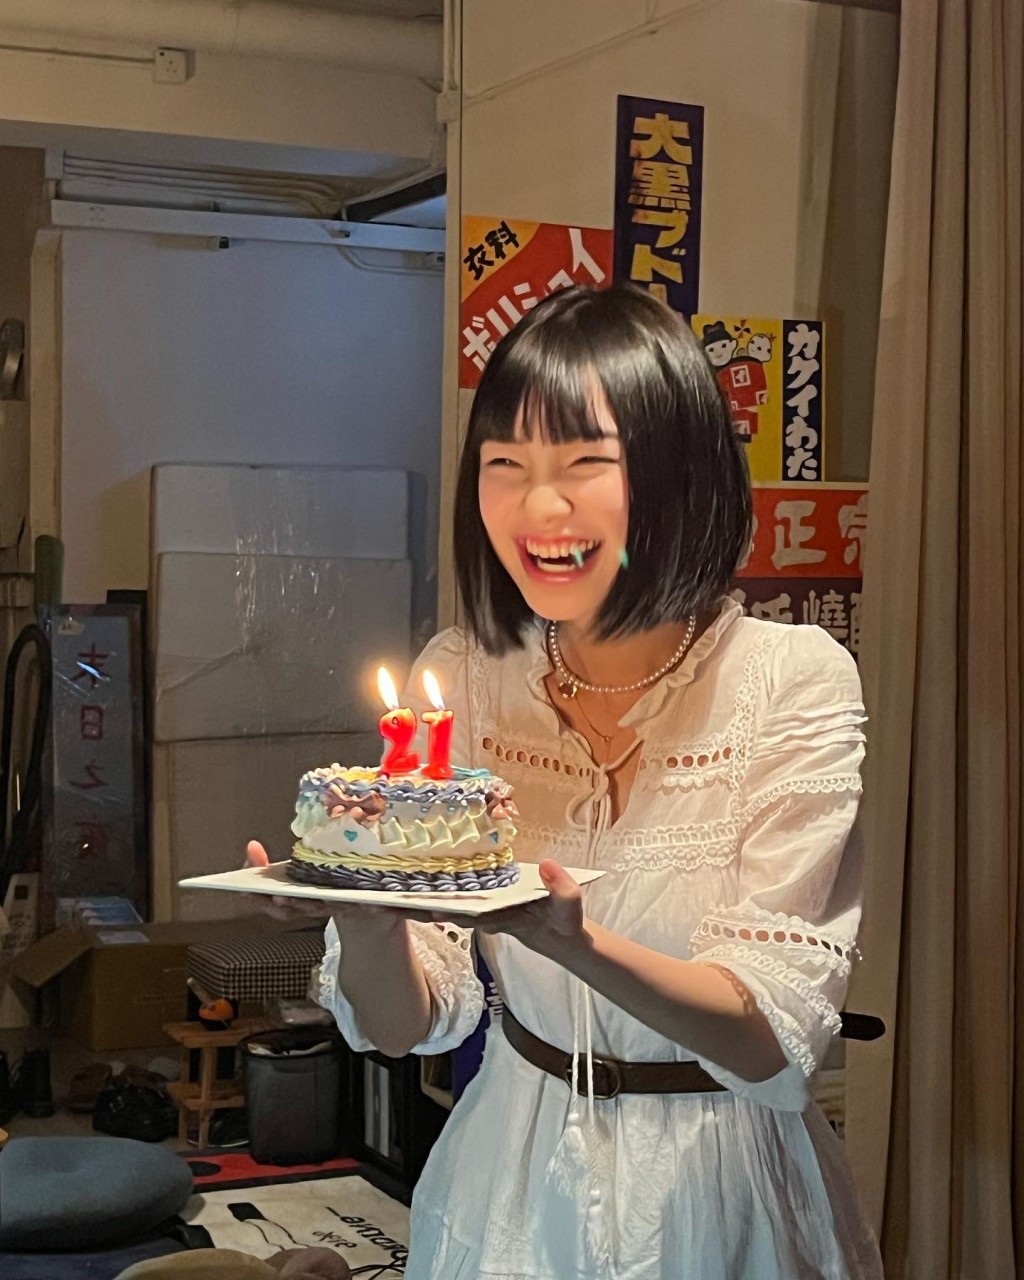 謝咏欣去年3月底慶祝21歲生日。